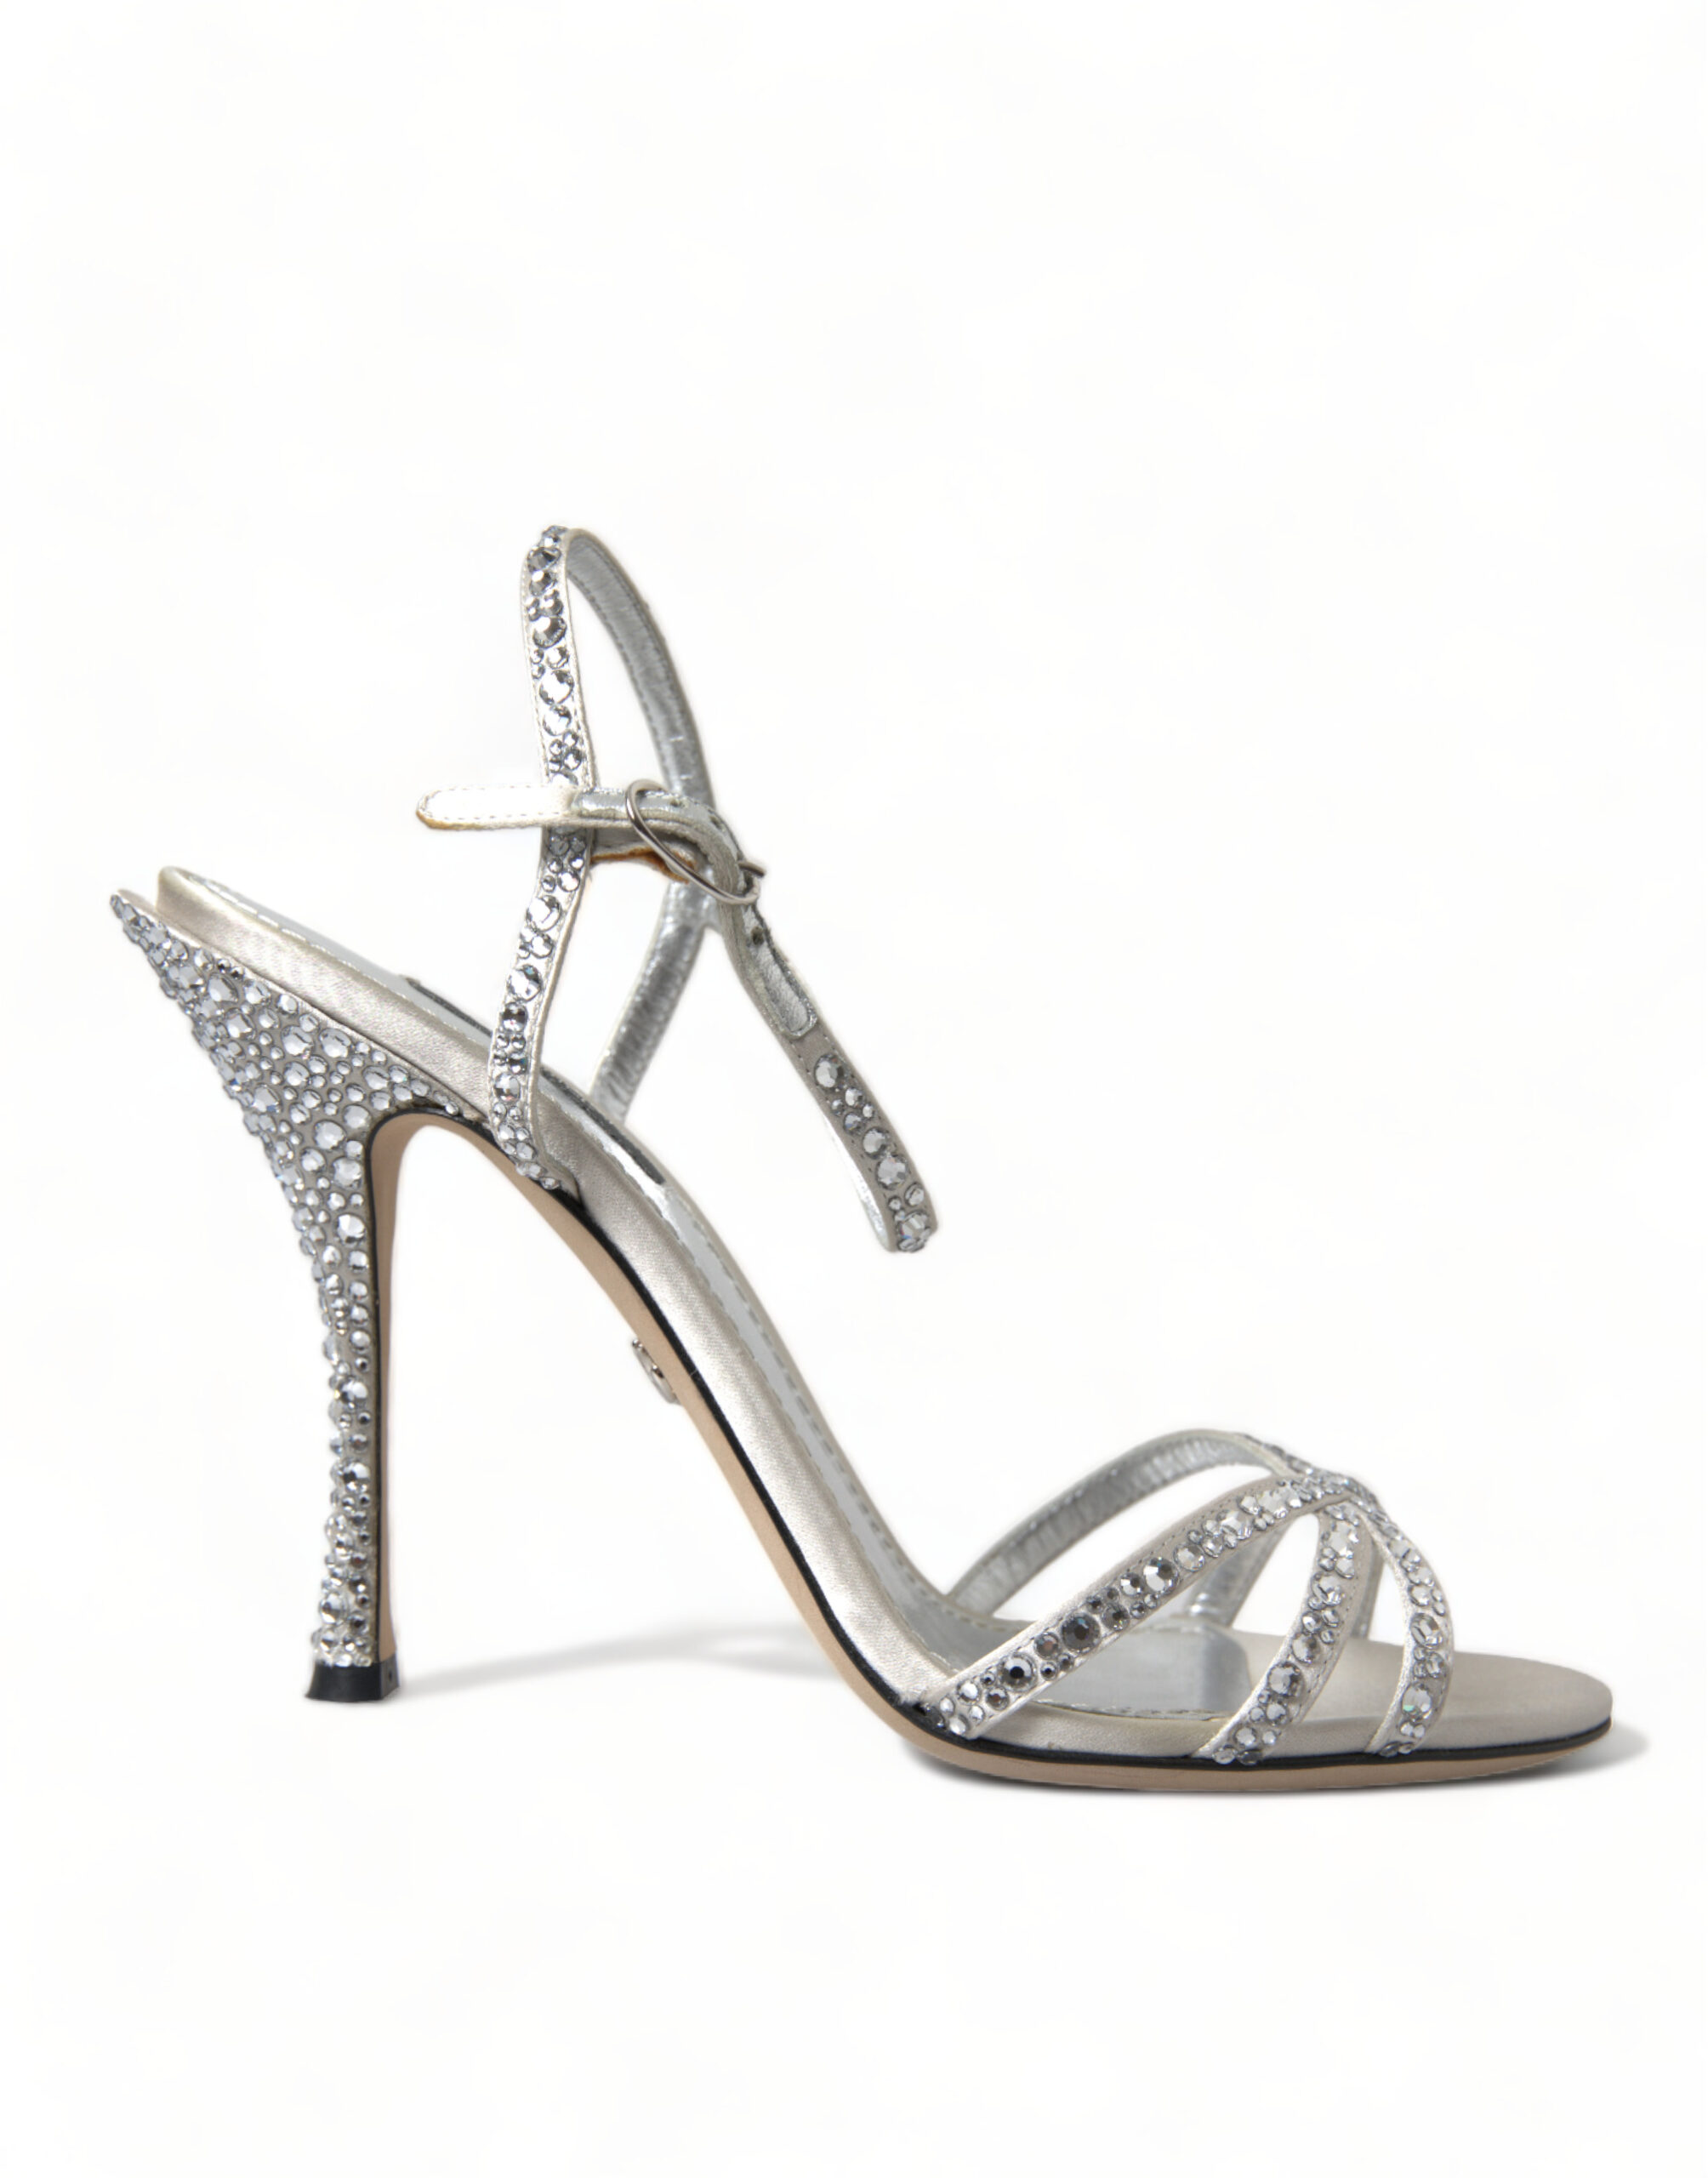 Silver Dolce & Gabbana Elegant Crystal Embellished Heels Sandals EU36.5/US6